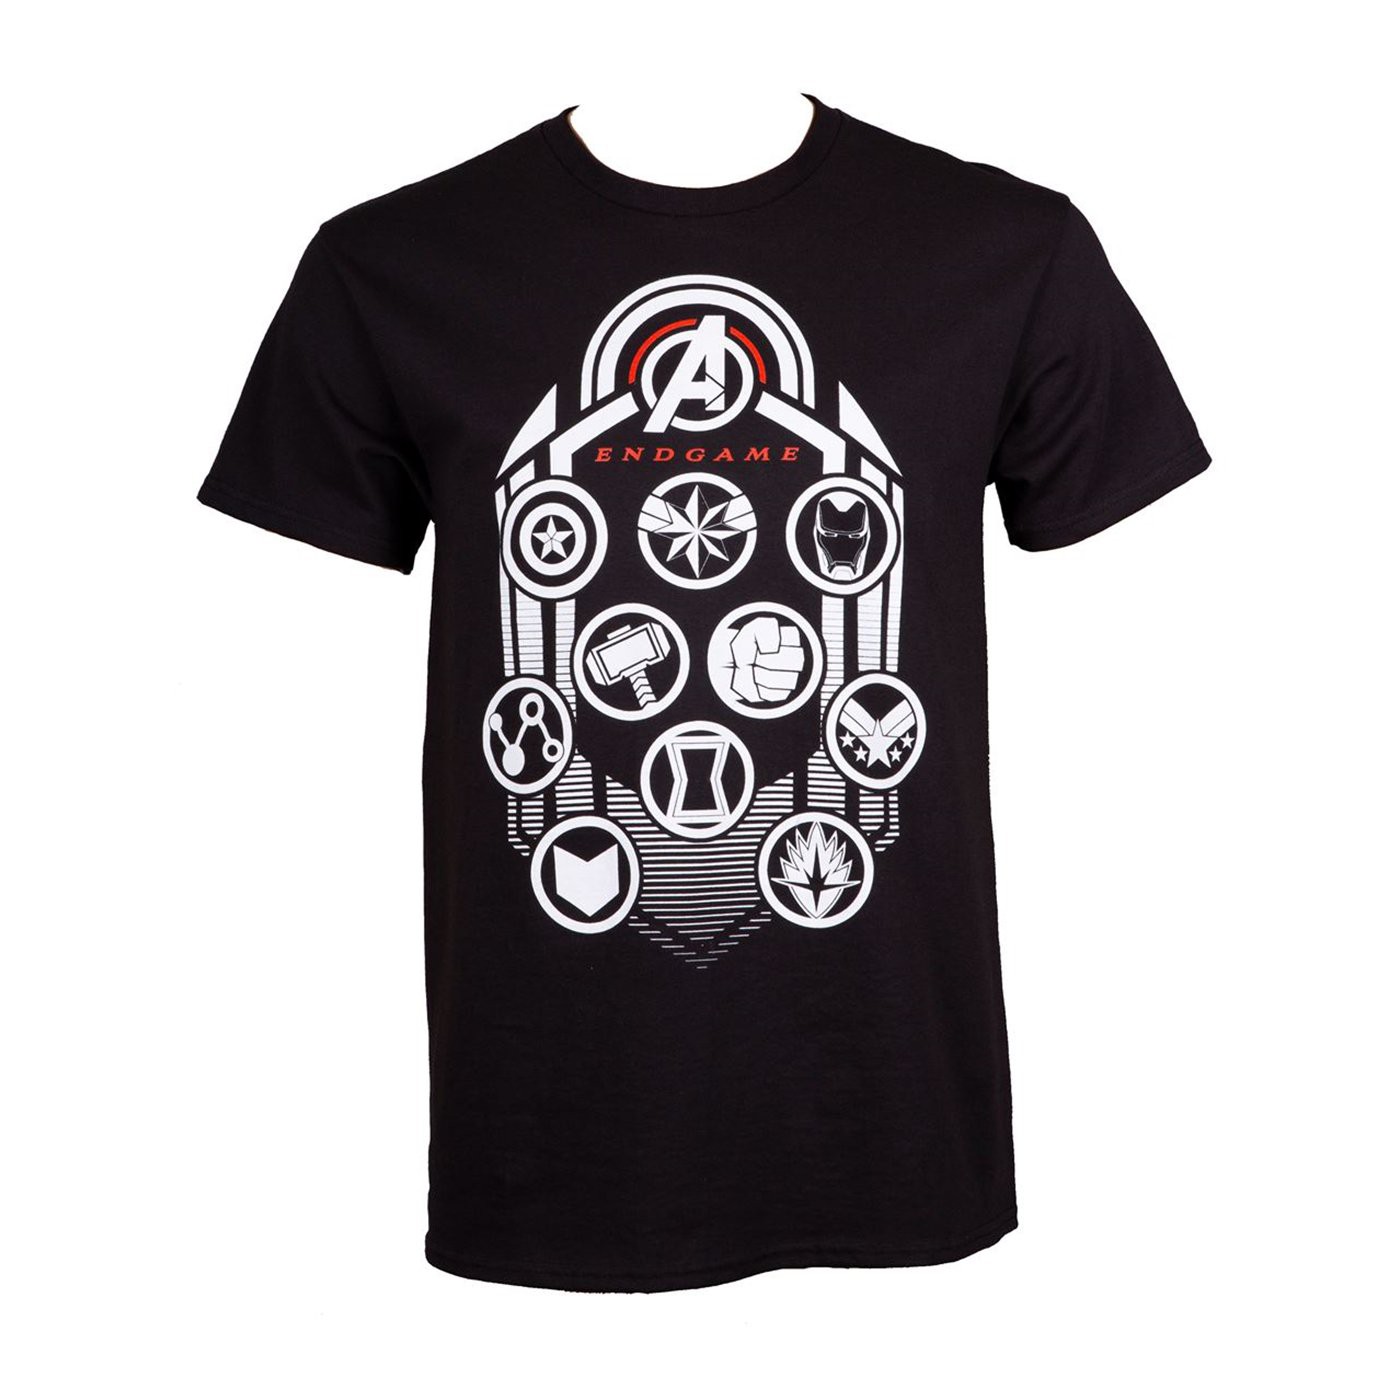 Avengers Endgame Logo's Men's T-Shirt